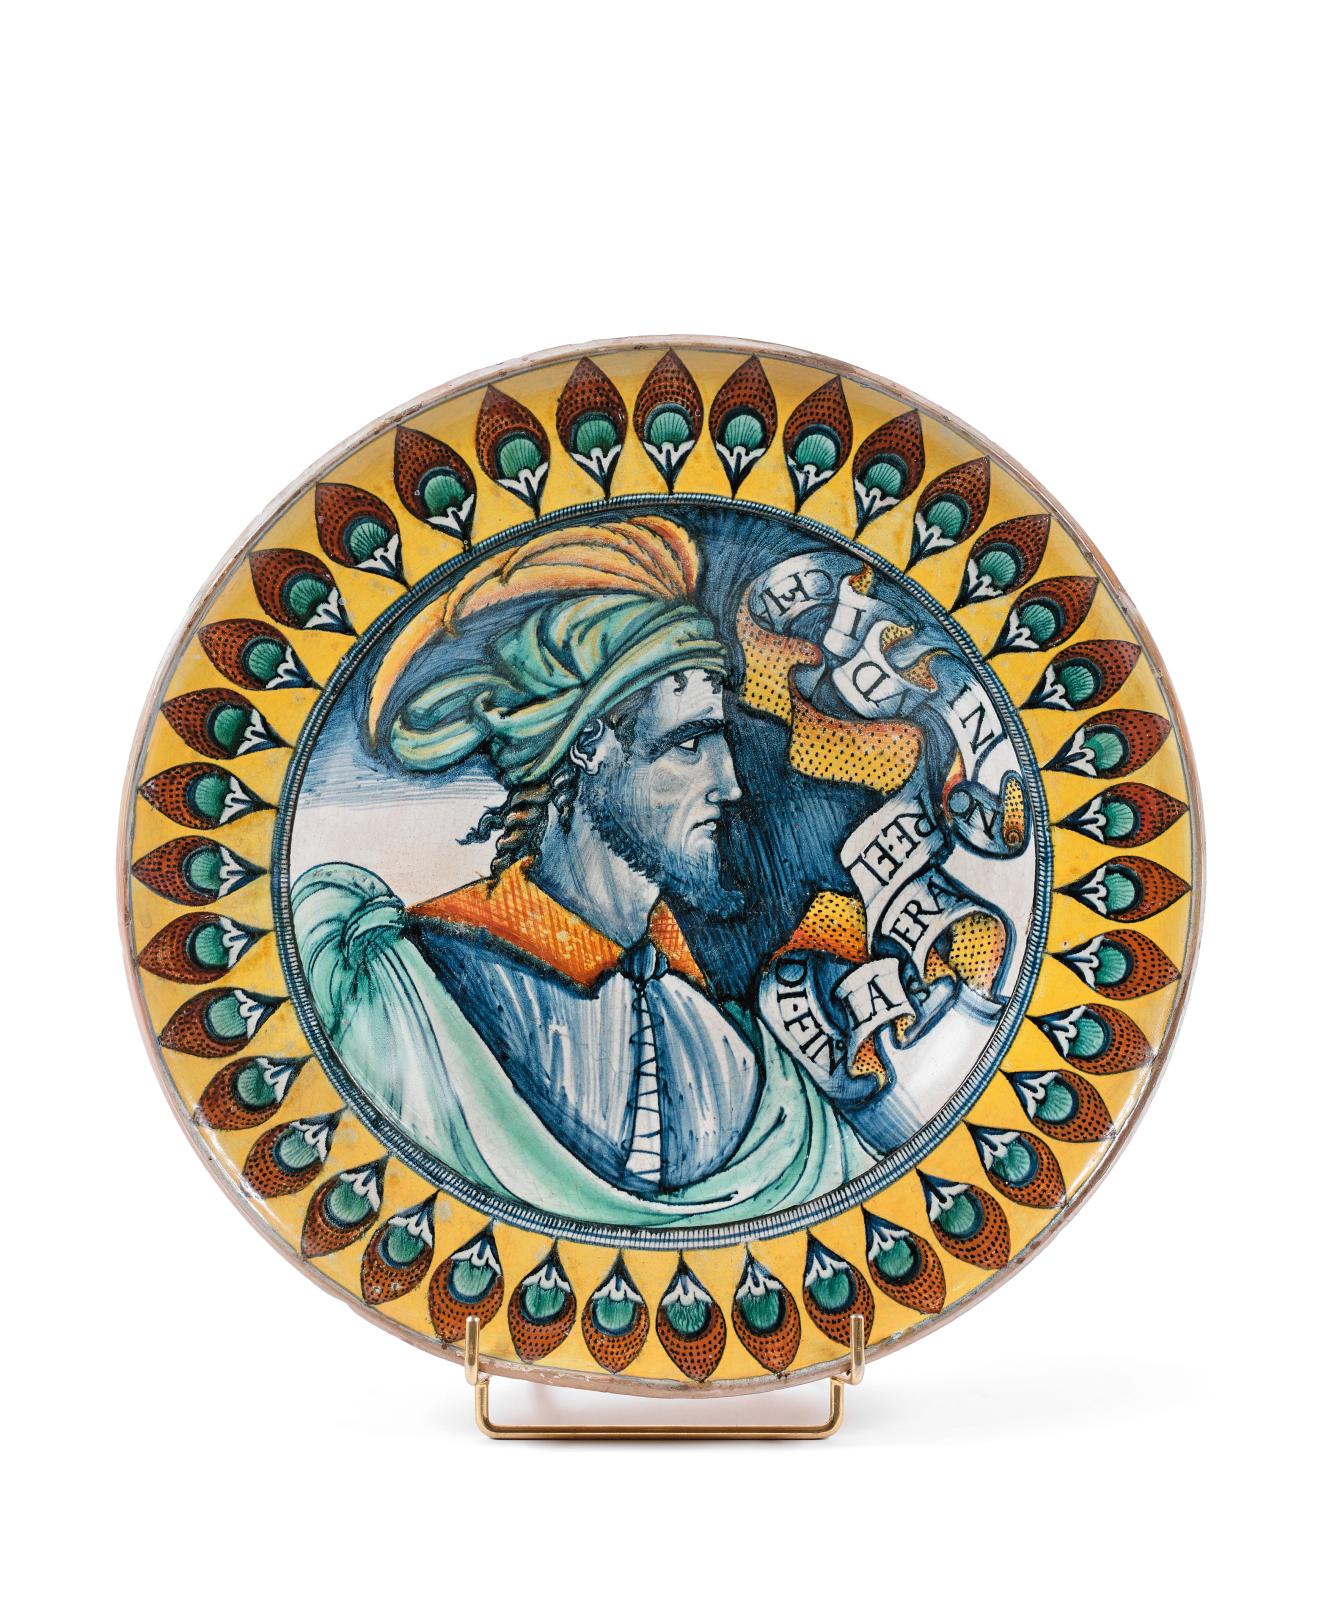 Ce plat rond en majolique (diam. 48 cm), à décor polychrome d’un buste d’homme de profil portant une coiffe ornée de plumes, obtenait 152 